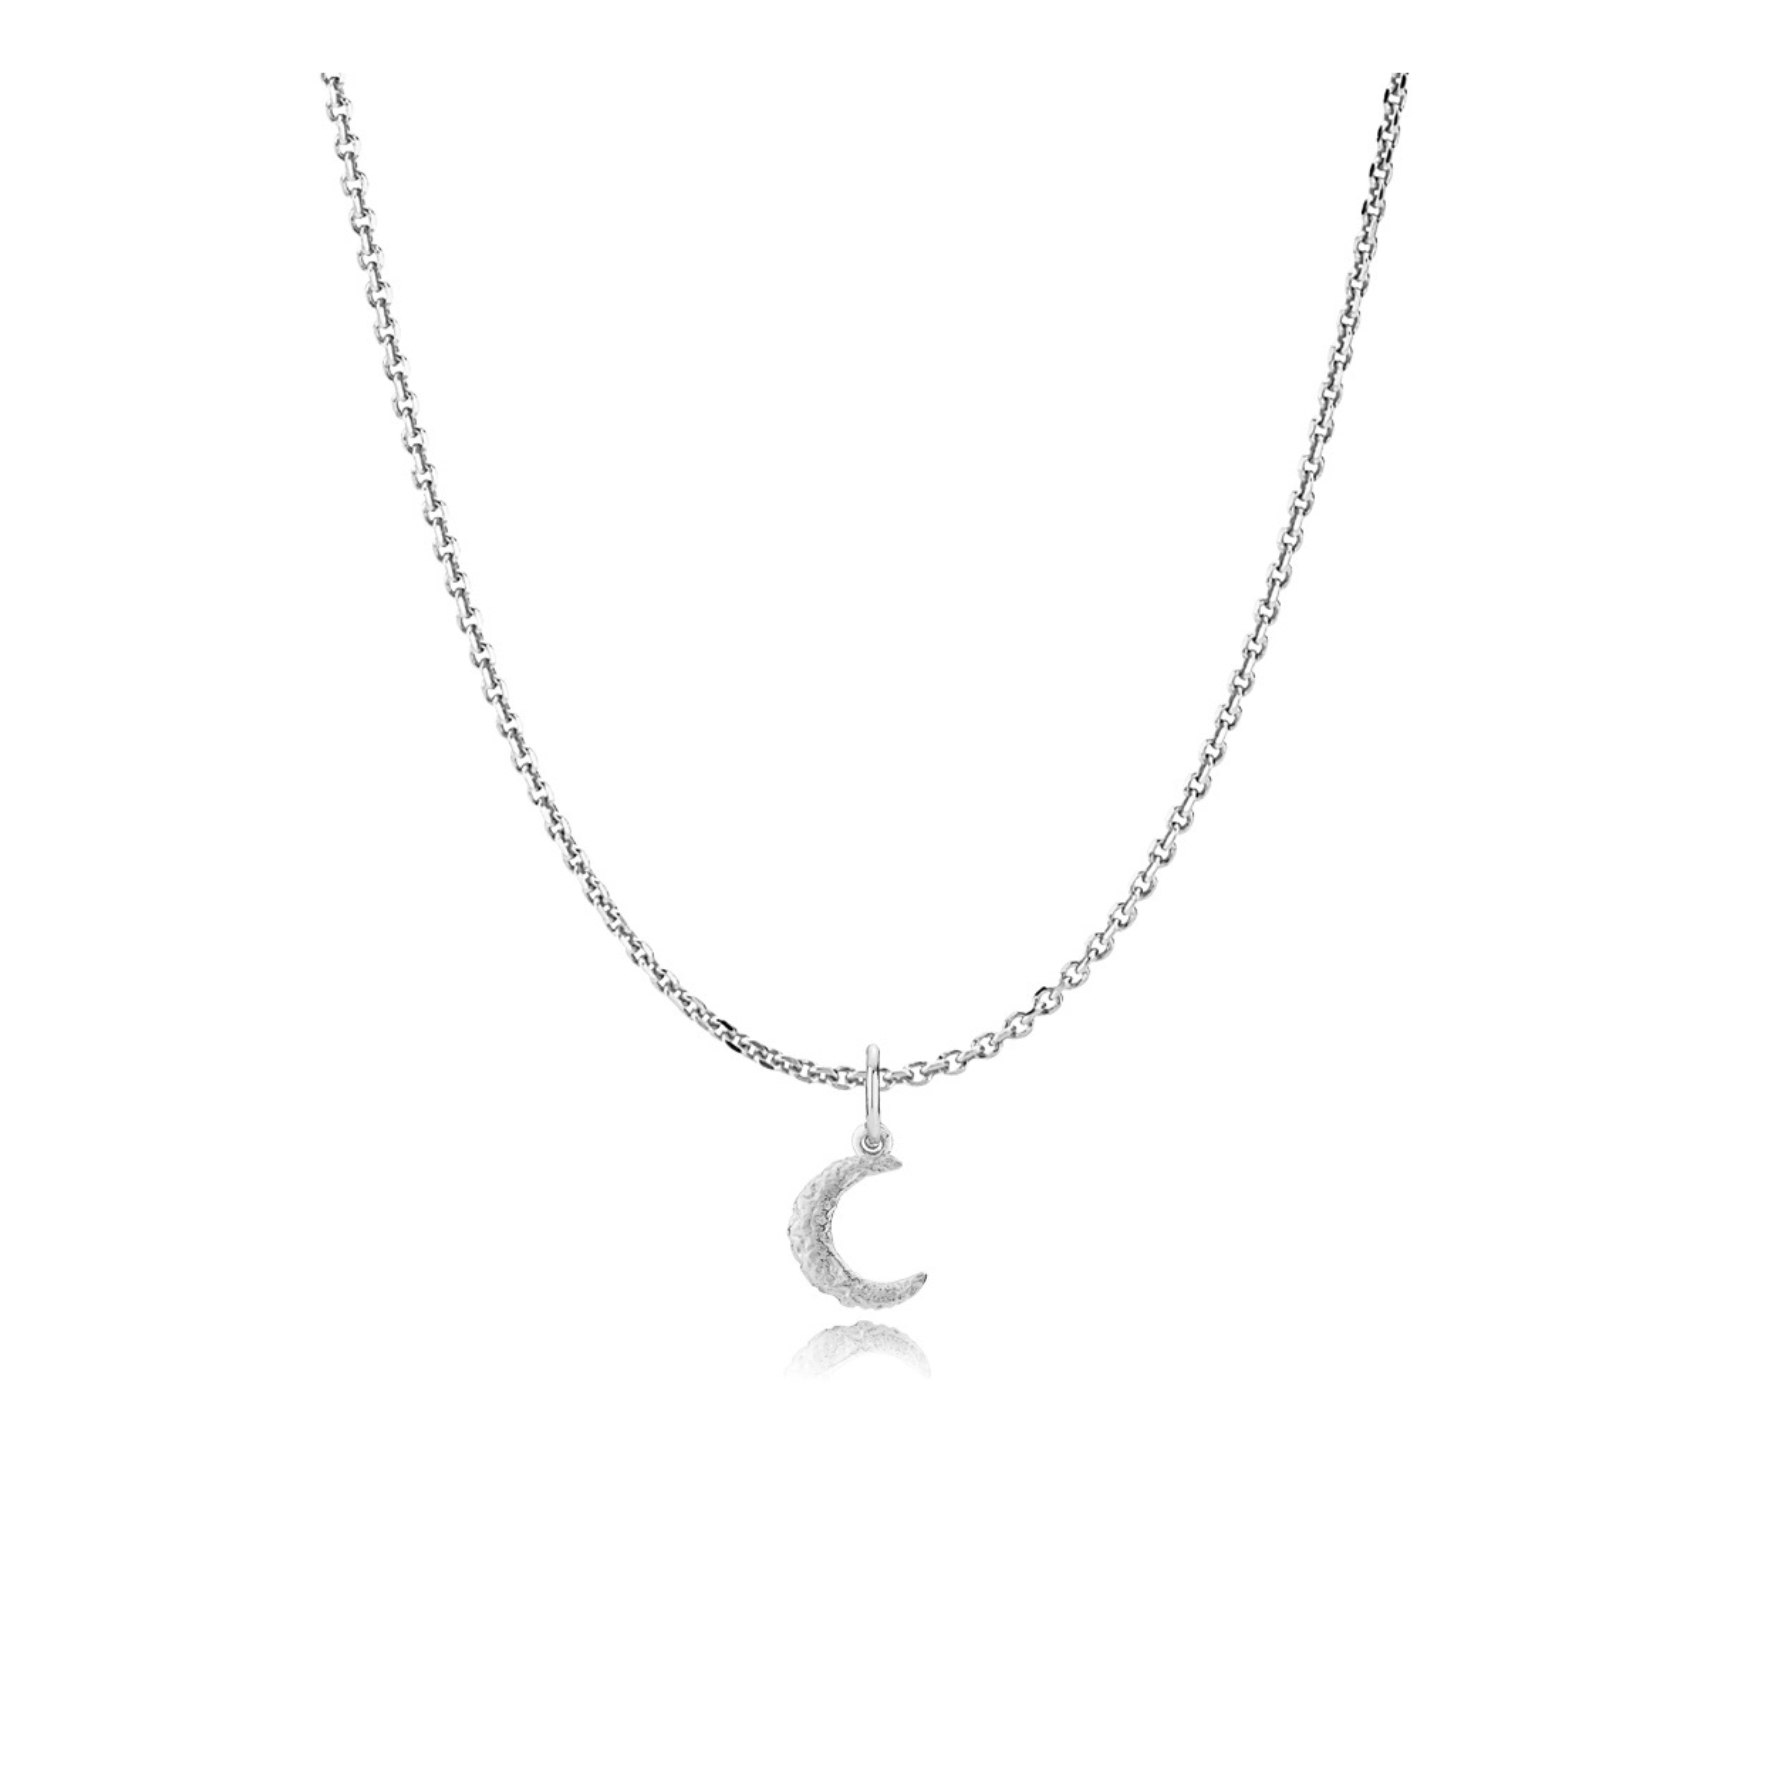 Universe Moon Necklace fra Sistie i Sølv Sterling 925